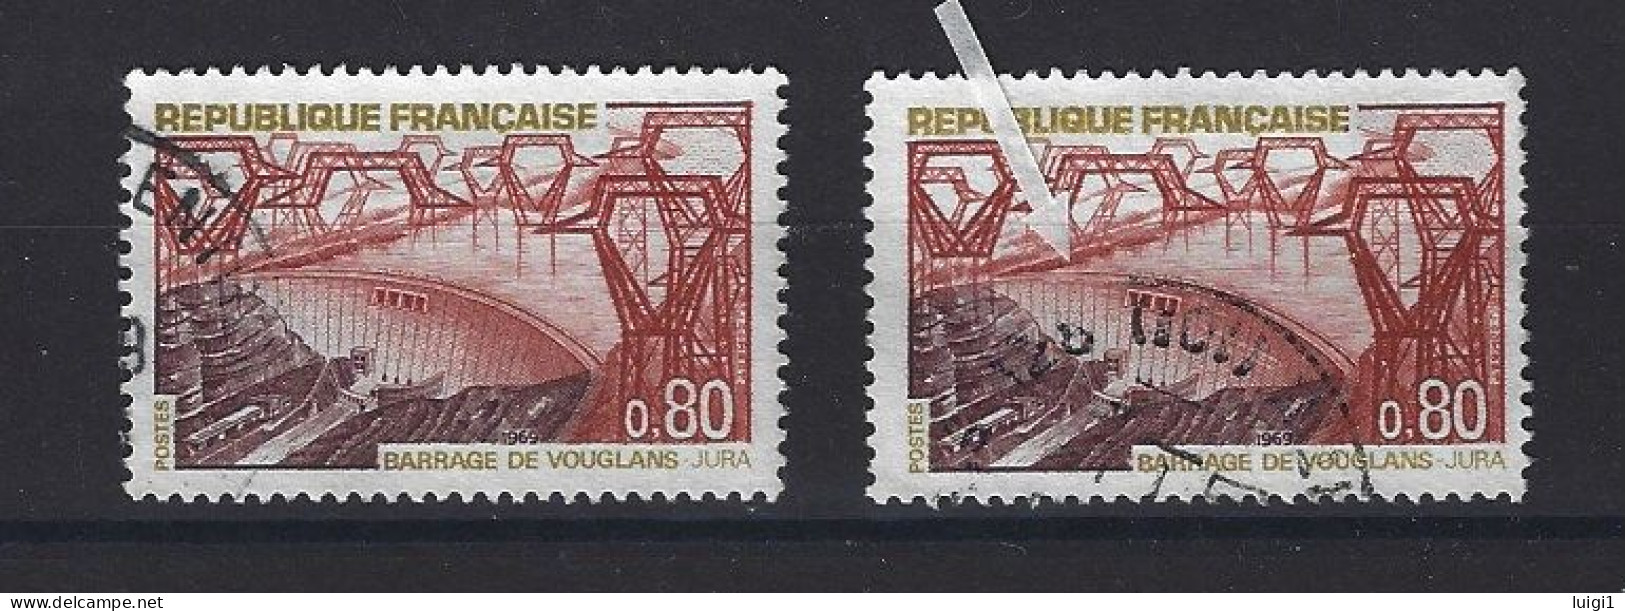 FRANCE 1969 - Y&T N°1583 + N°1583b . 80 C. Barrage De Vouglans. - Variété : Normal + Barrage Rompu. Oblitérés. TB - Usati